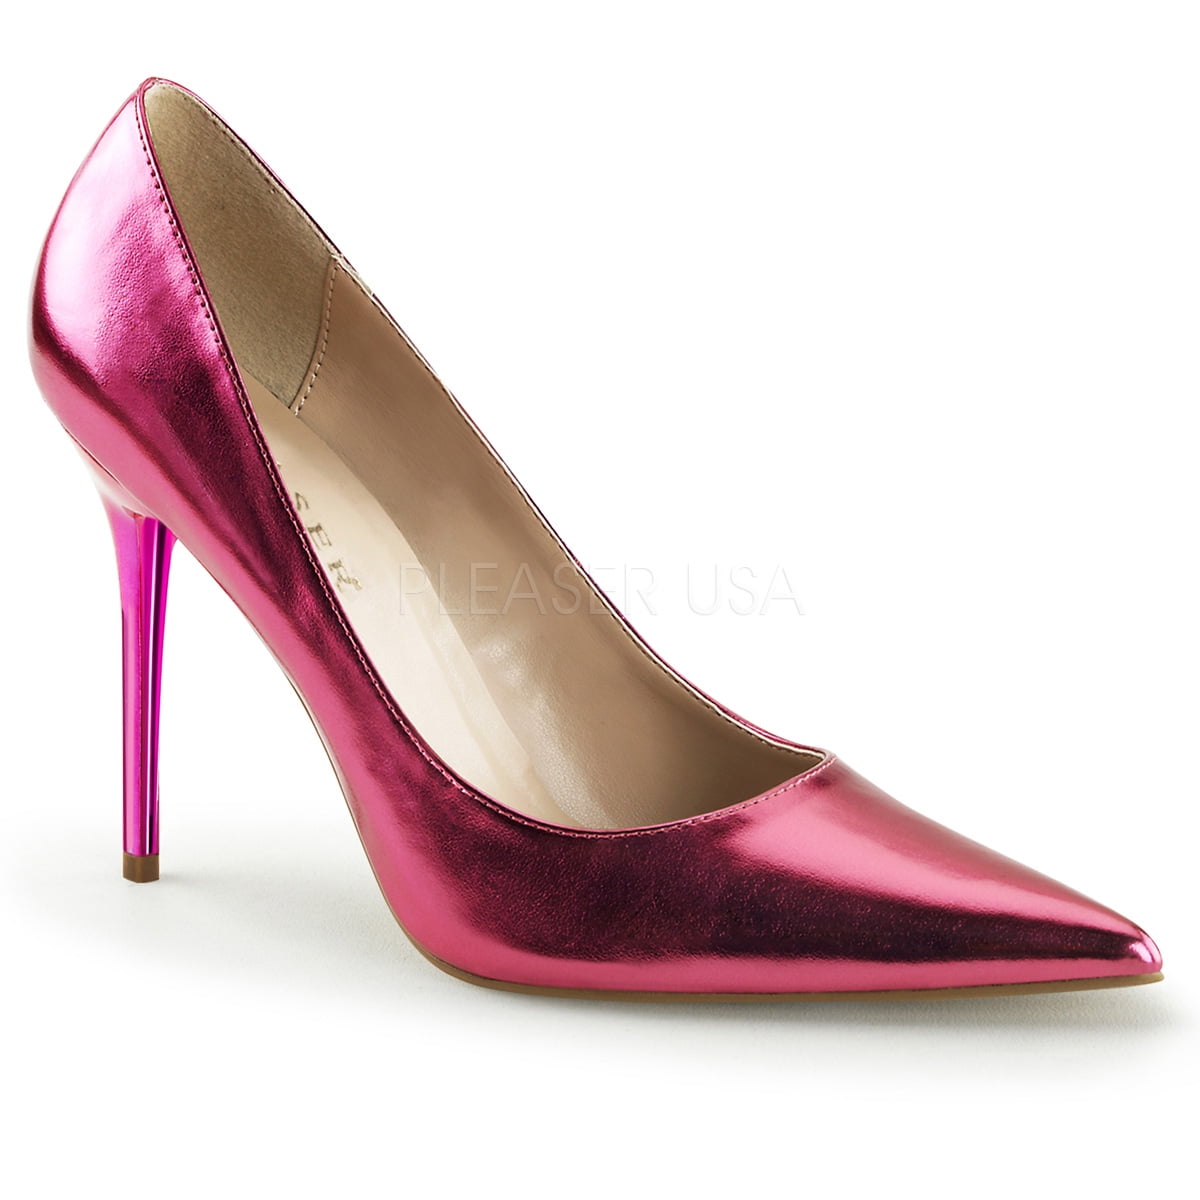 Missguided tie up pink metallic heels. NEVER WORN ,... - Depop